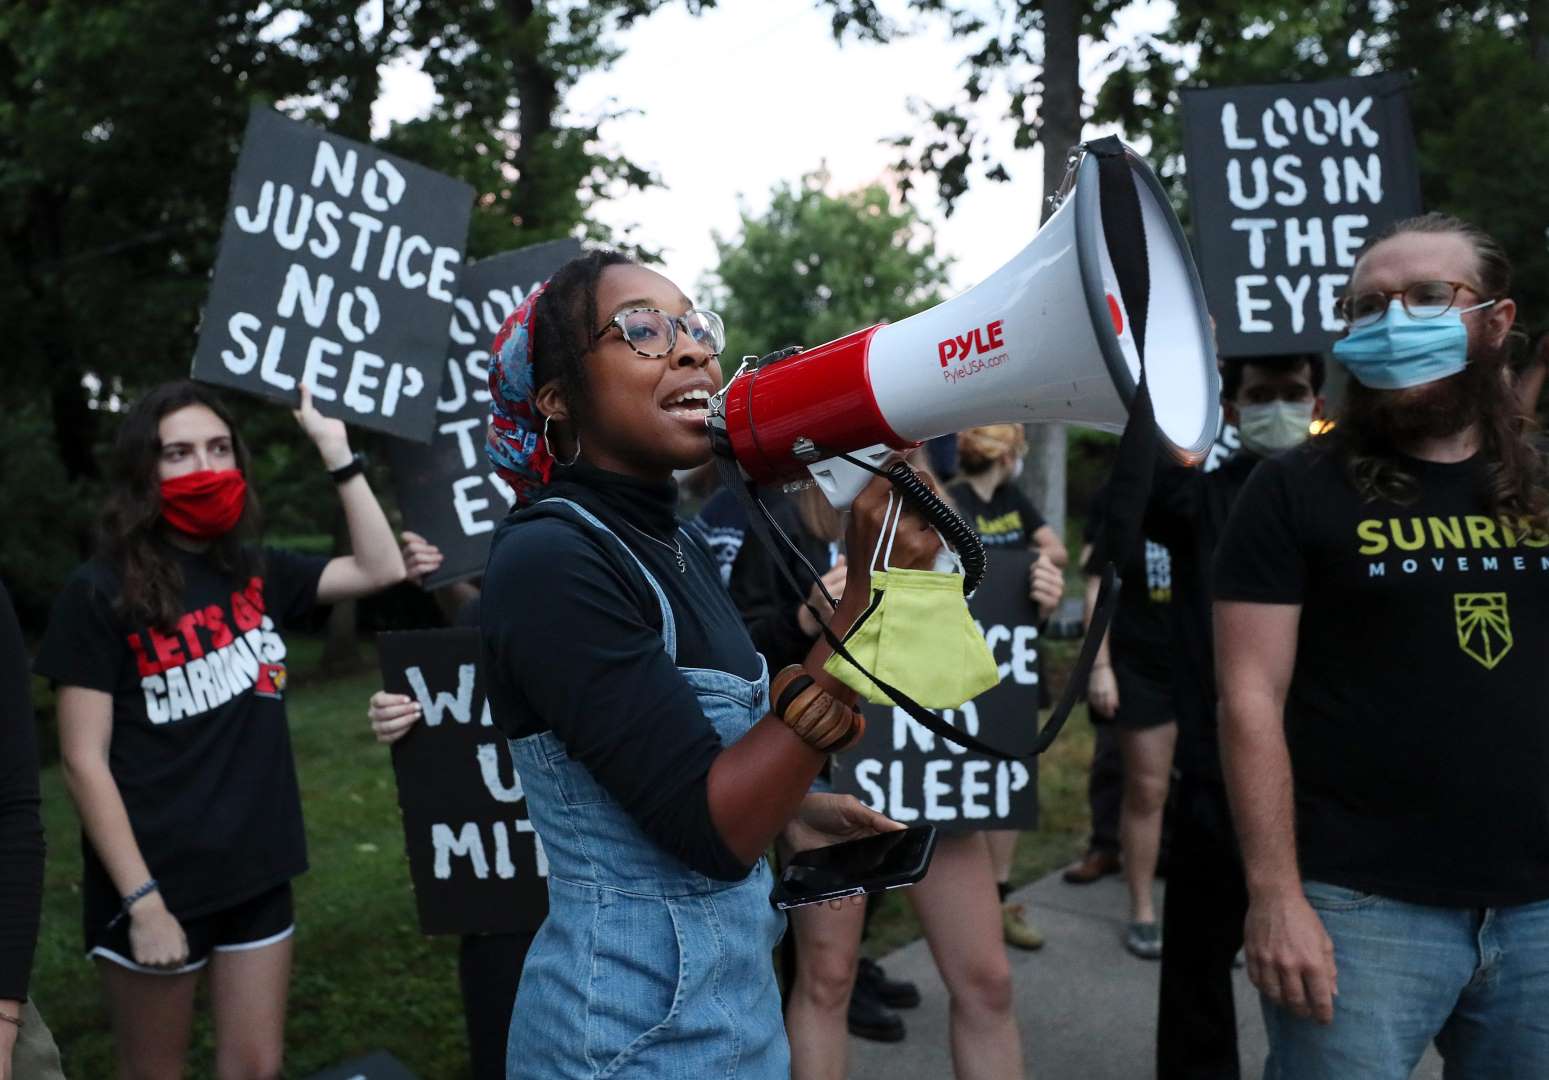 Un militant de Sunrise parle dans un mégaphone tandis que d'autres manifestants se tiennent derrière des pancartes disant "Pas de justice, pas de sommeil" et "Regardez-nous dans les yeux".